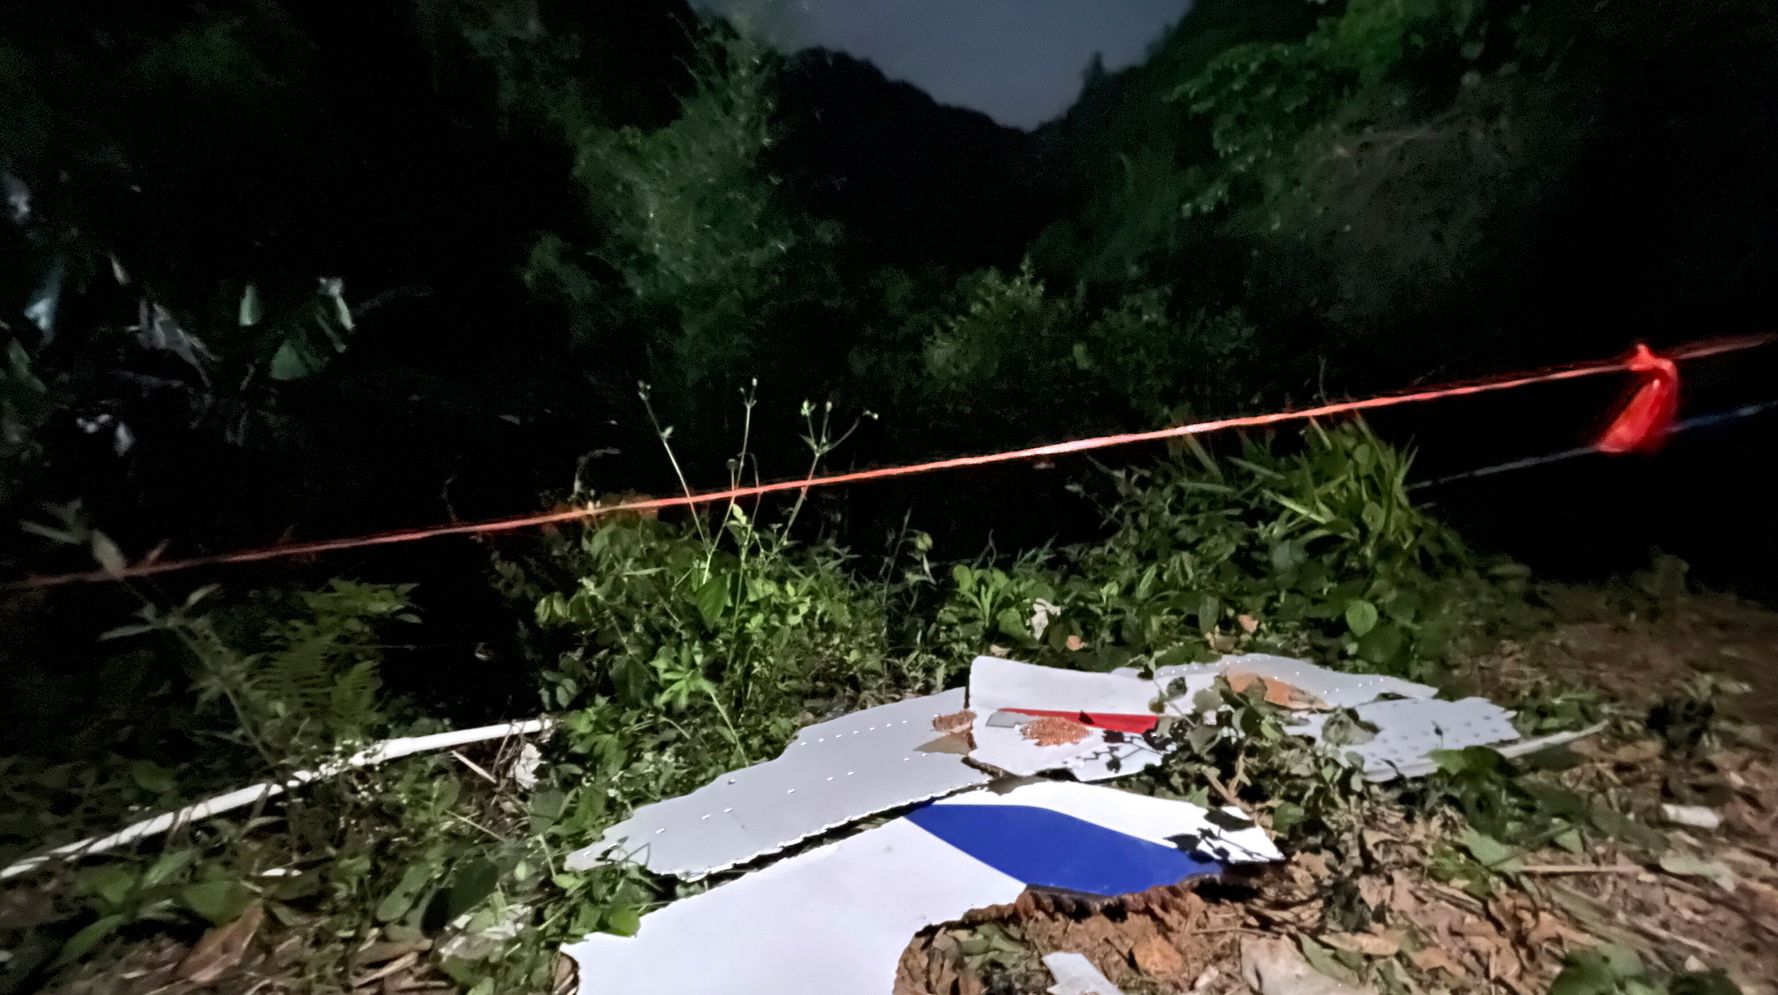 Aucun survivant n’a été retrouvé dans le crash d’un avion dans l’est de la Chine, selon les médias d’État